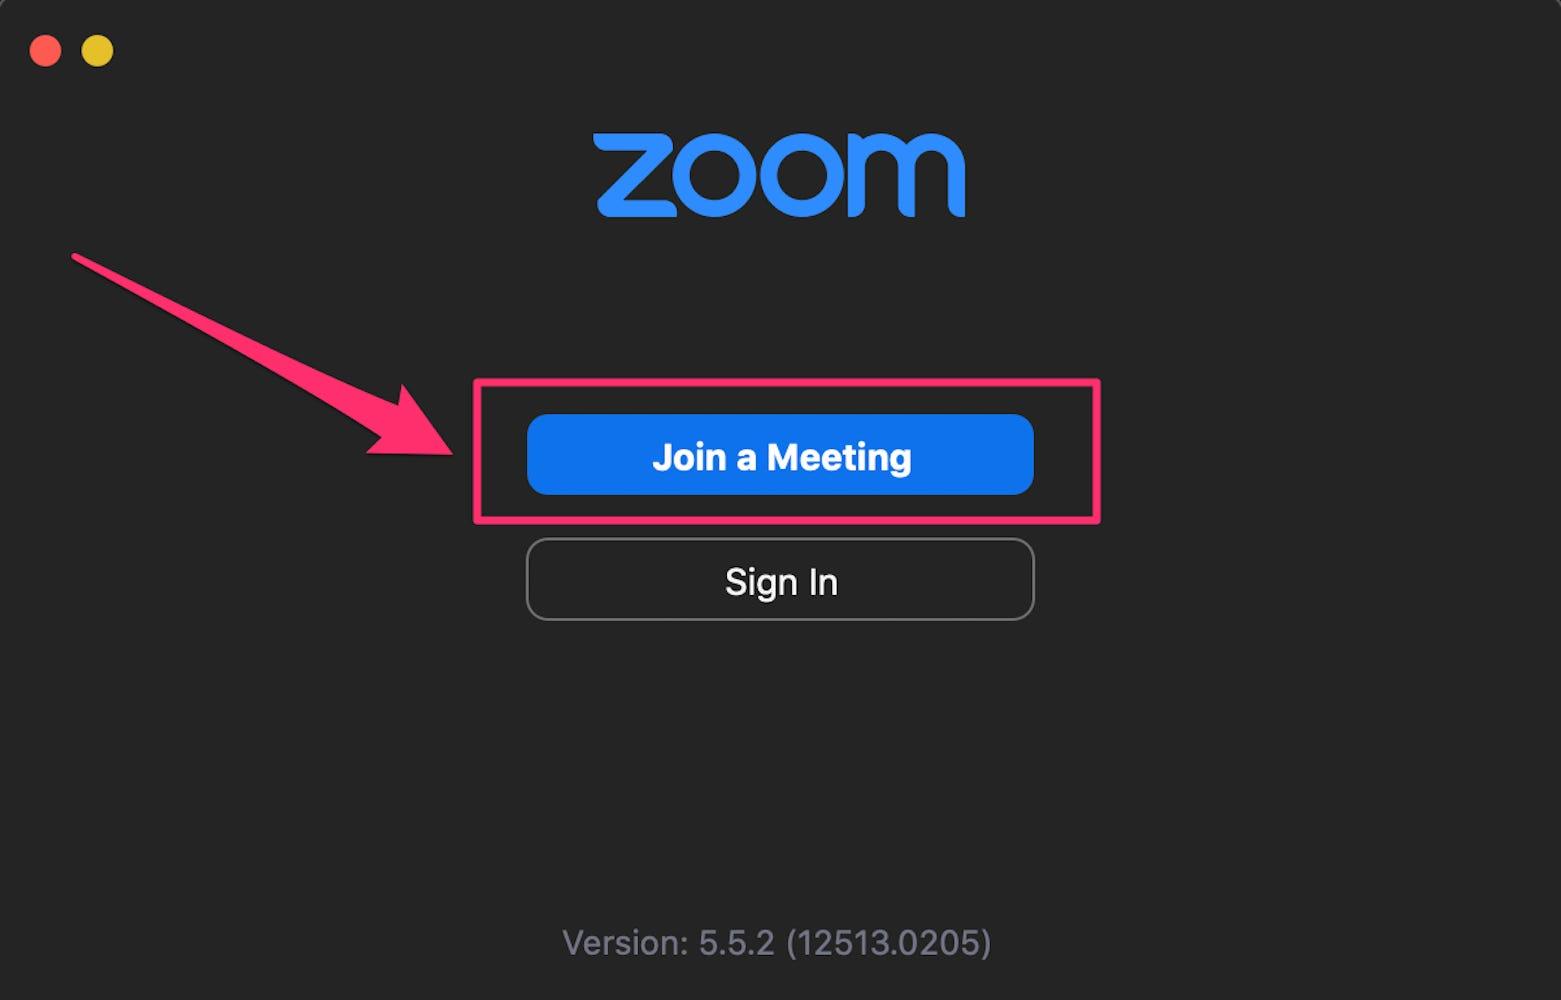 zoom meeting login id